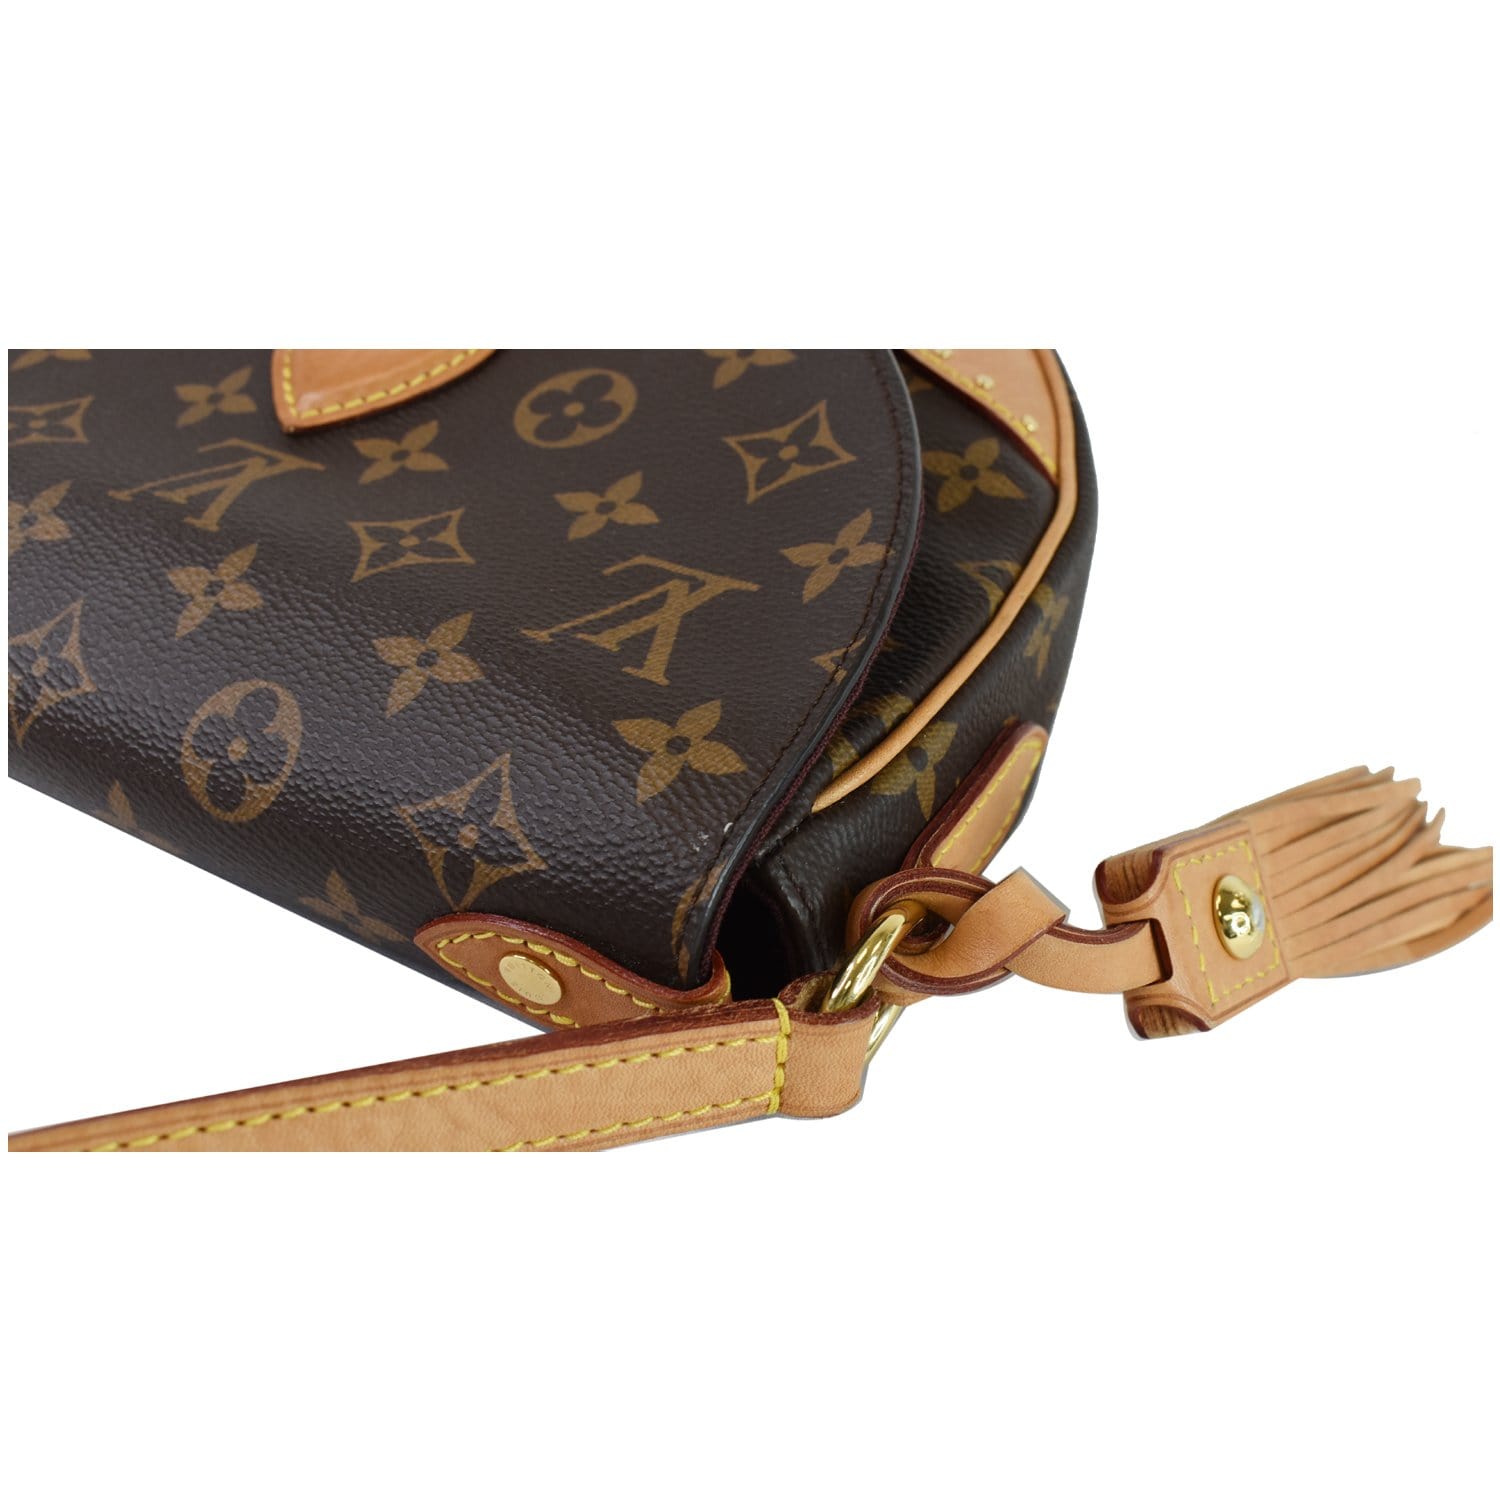 Louis Vuitton Saint Cloud Monogram Canvas Crossbody Bag